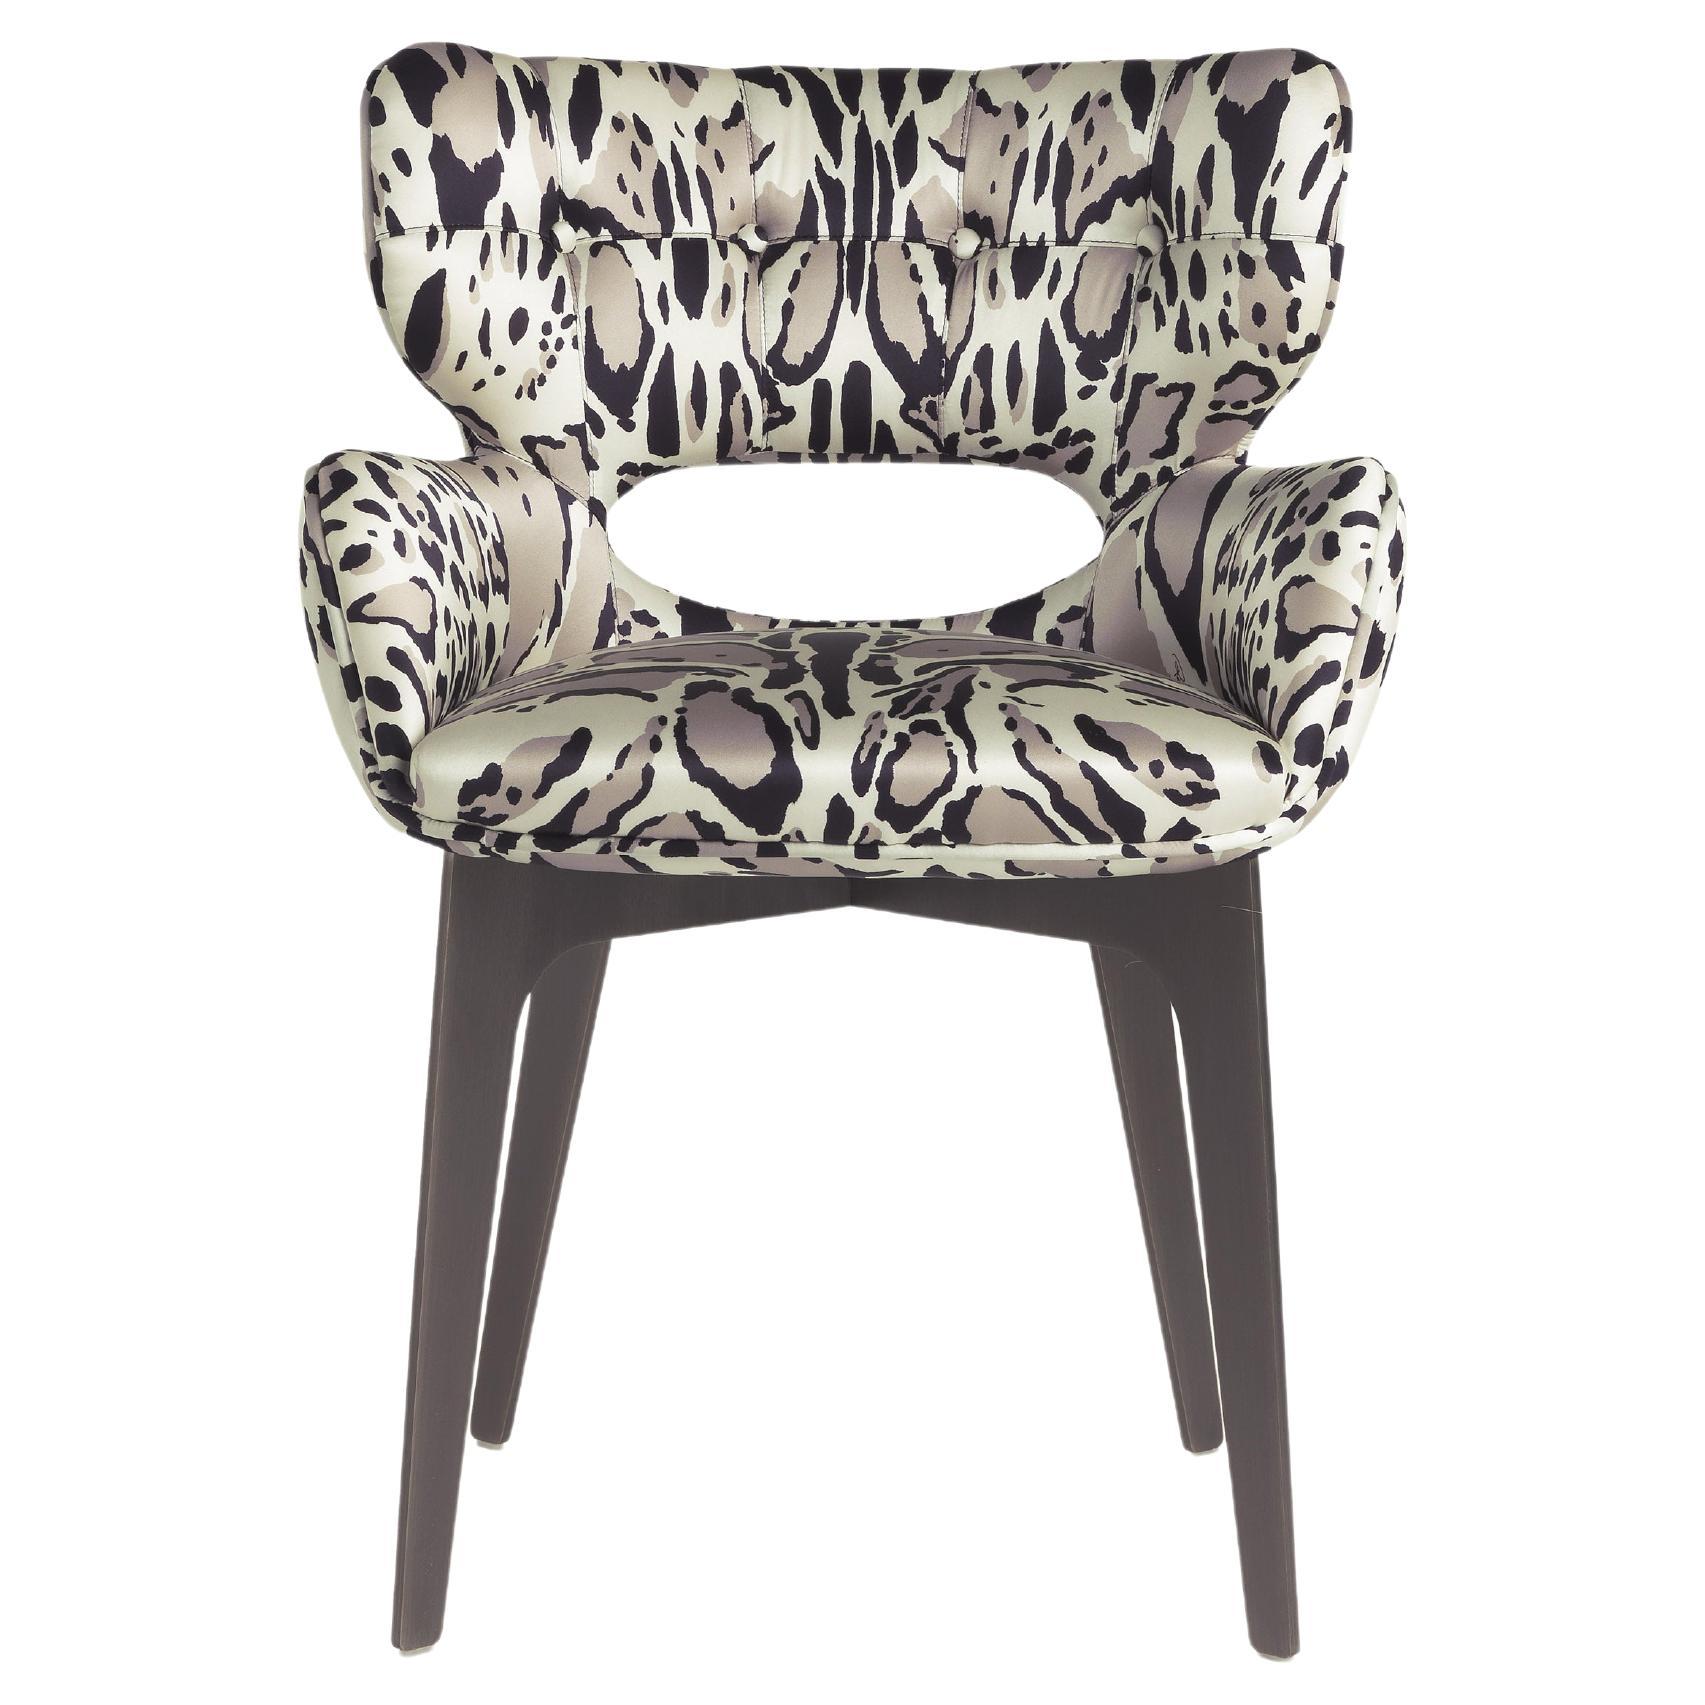 Maclaine-Stuhl aus dem 21. Jahrhundert mit Stoff von Roberto Cavalli Home Interiors